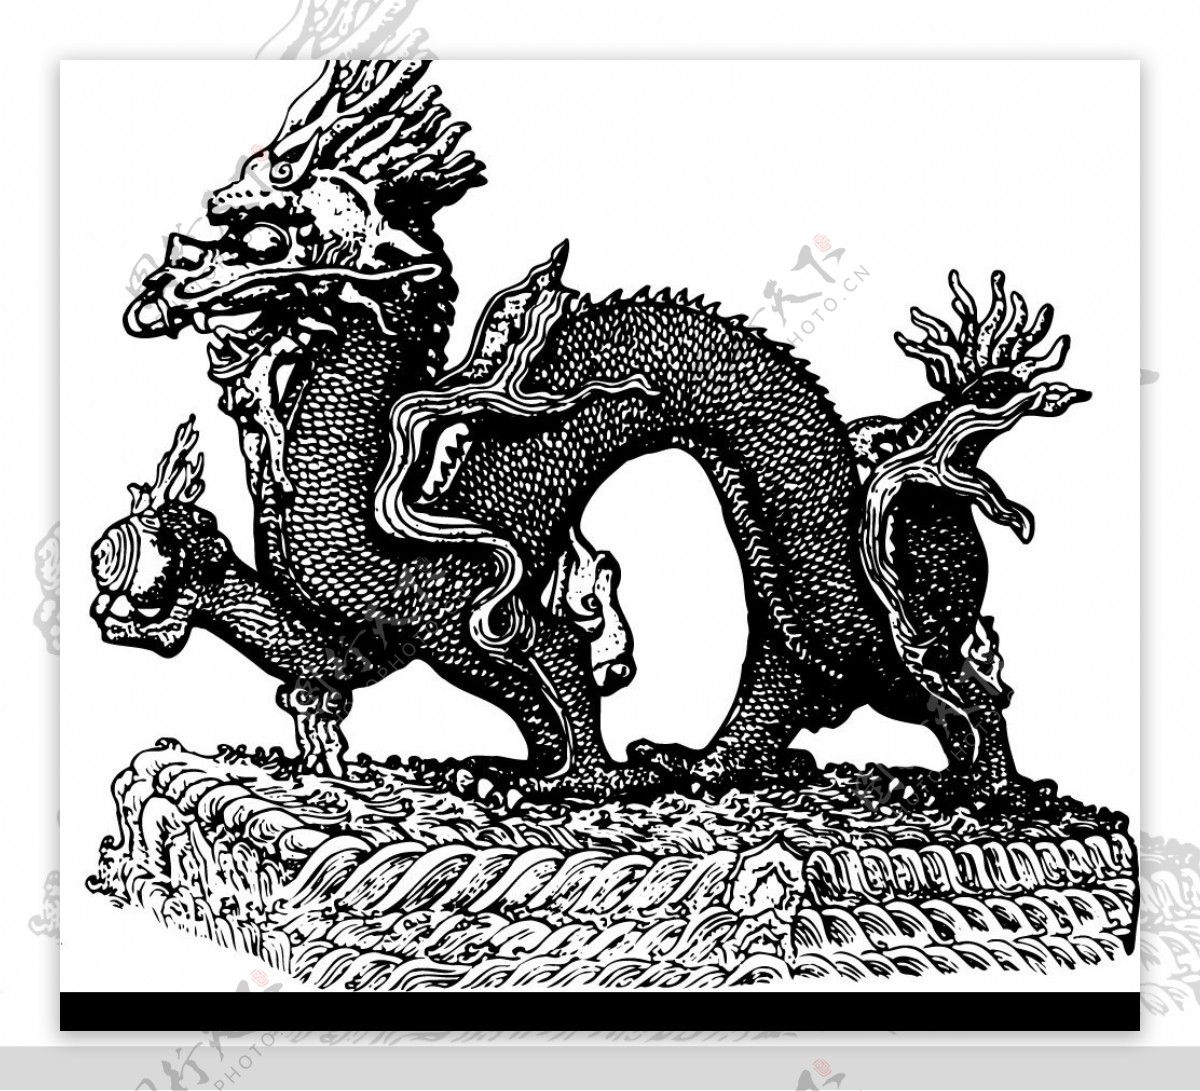 具有中国几千年民族特色吉祥图案3图片